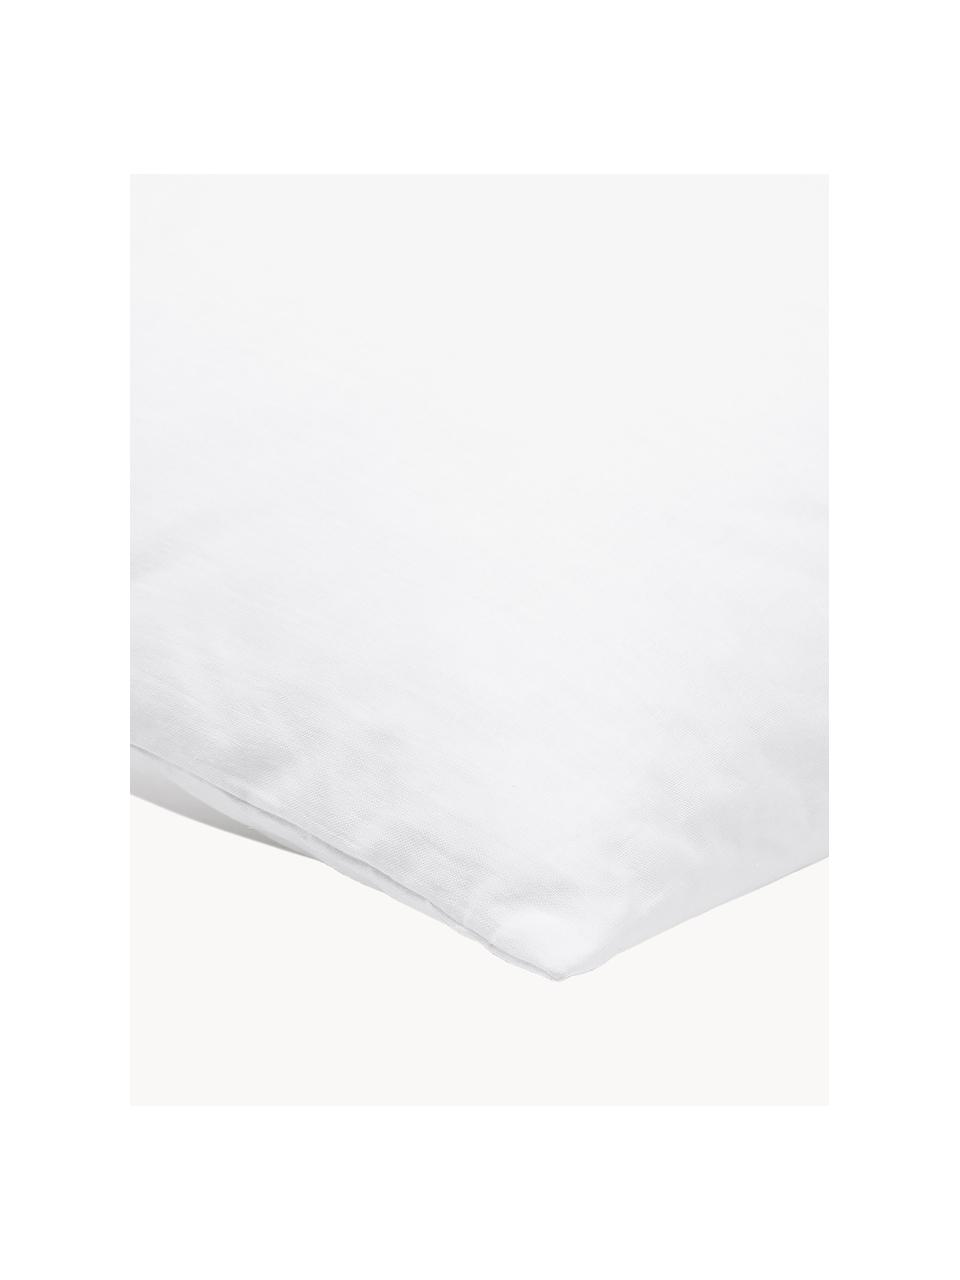 Wkład do poduszki dekoracyjnej z mikrofibry Sia, 60x60, Biały, S 60 x D 60 cm